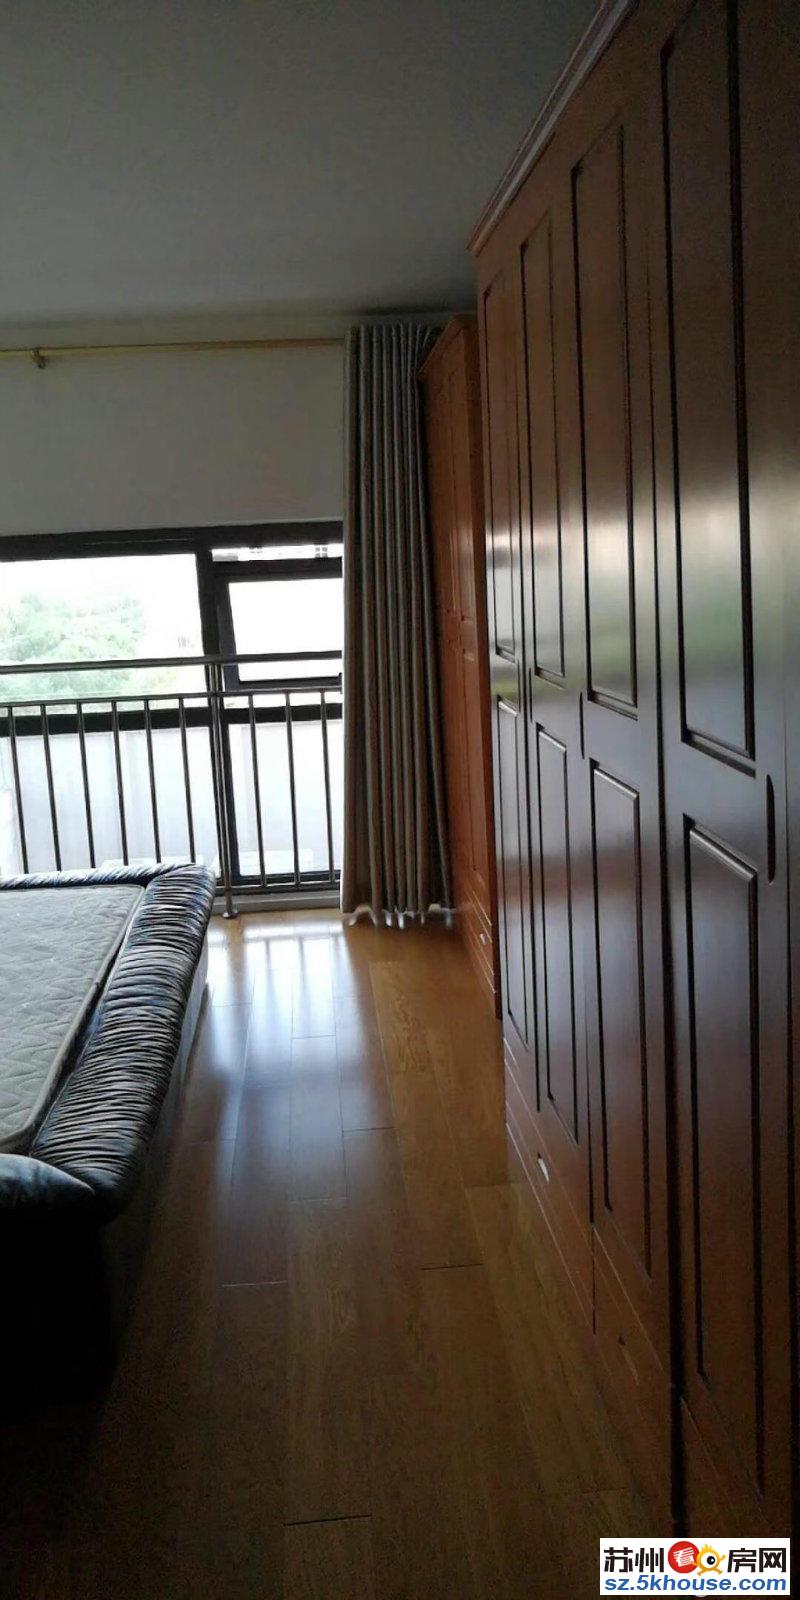 鑫鑫国际精装修复试公寓房真实相片2个卧室